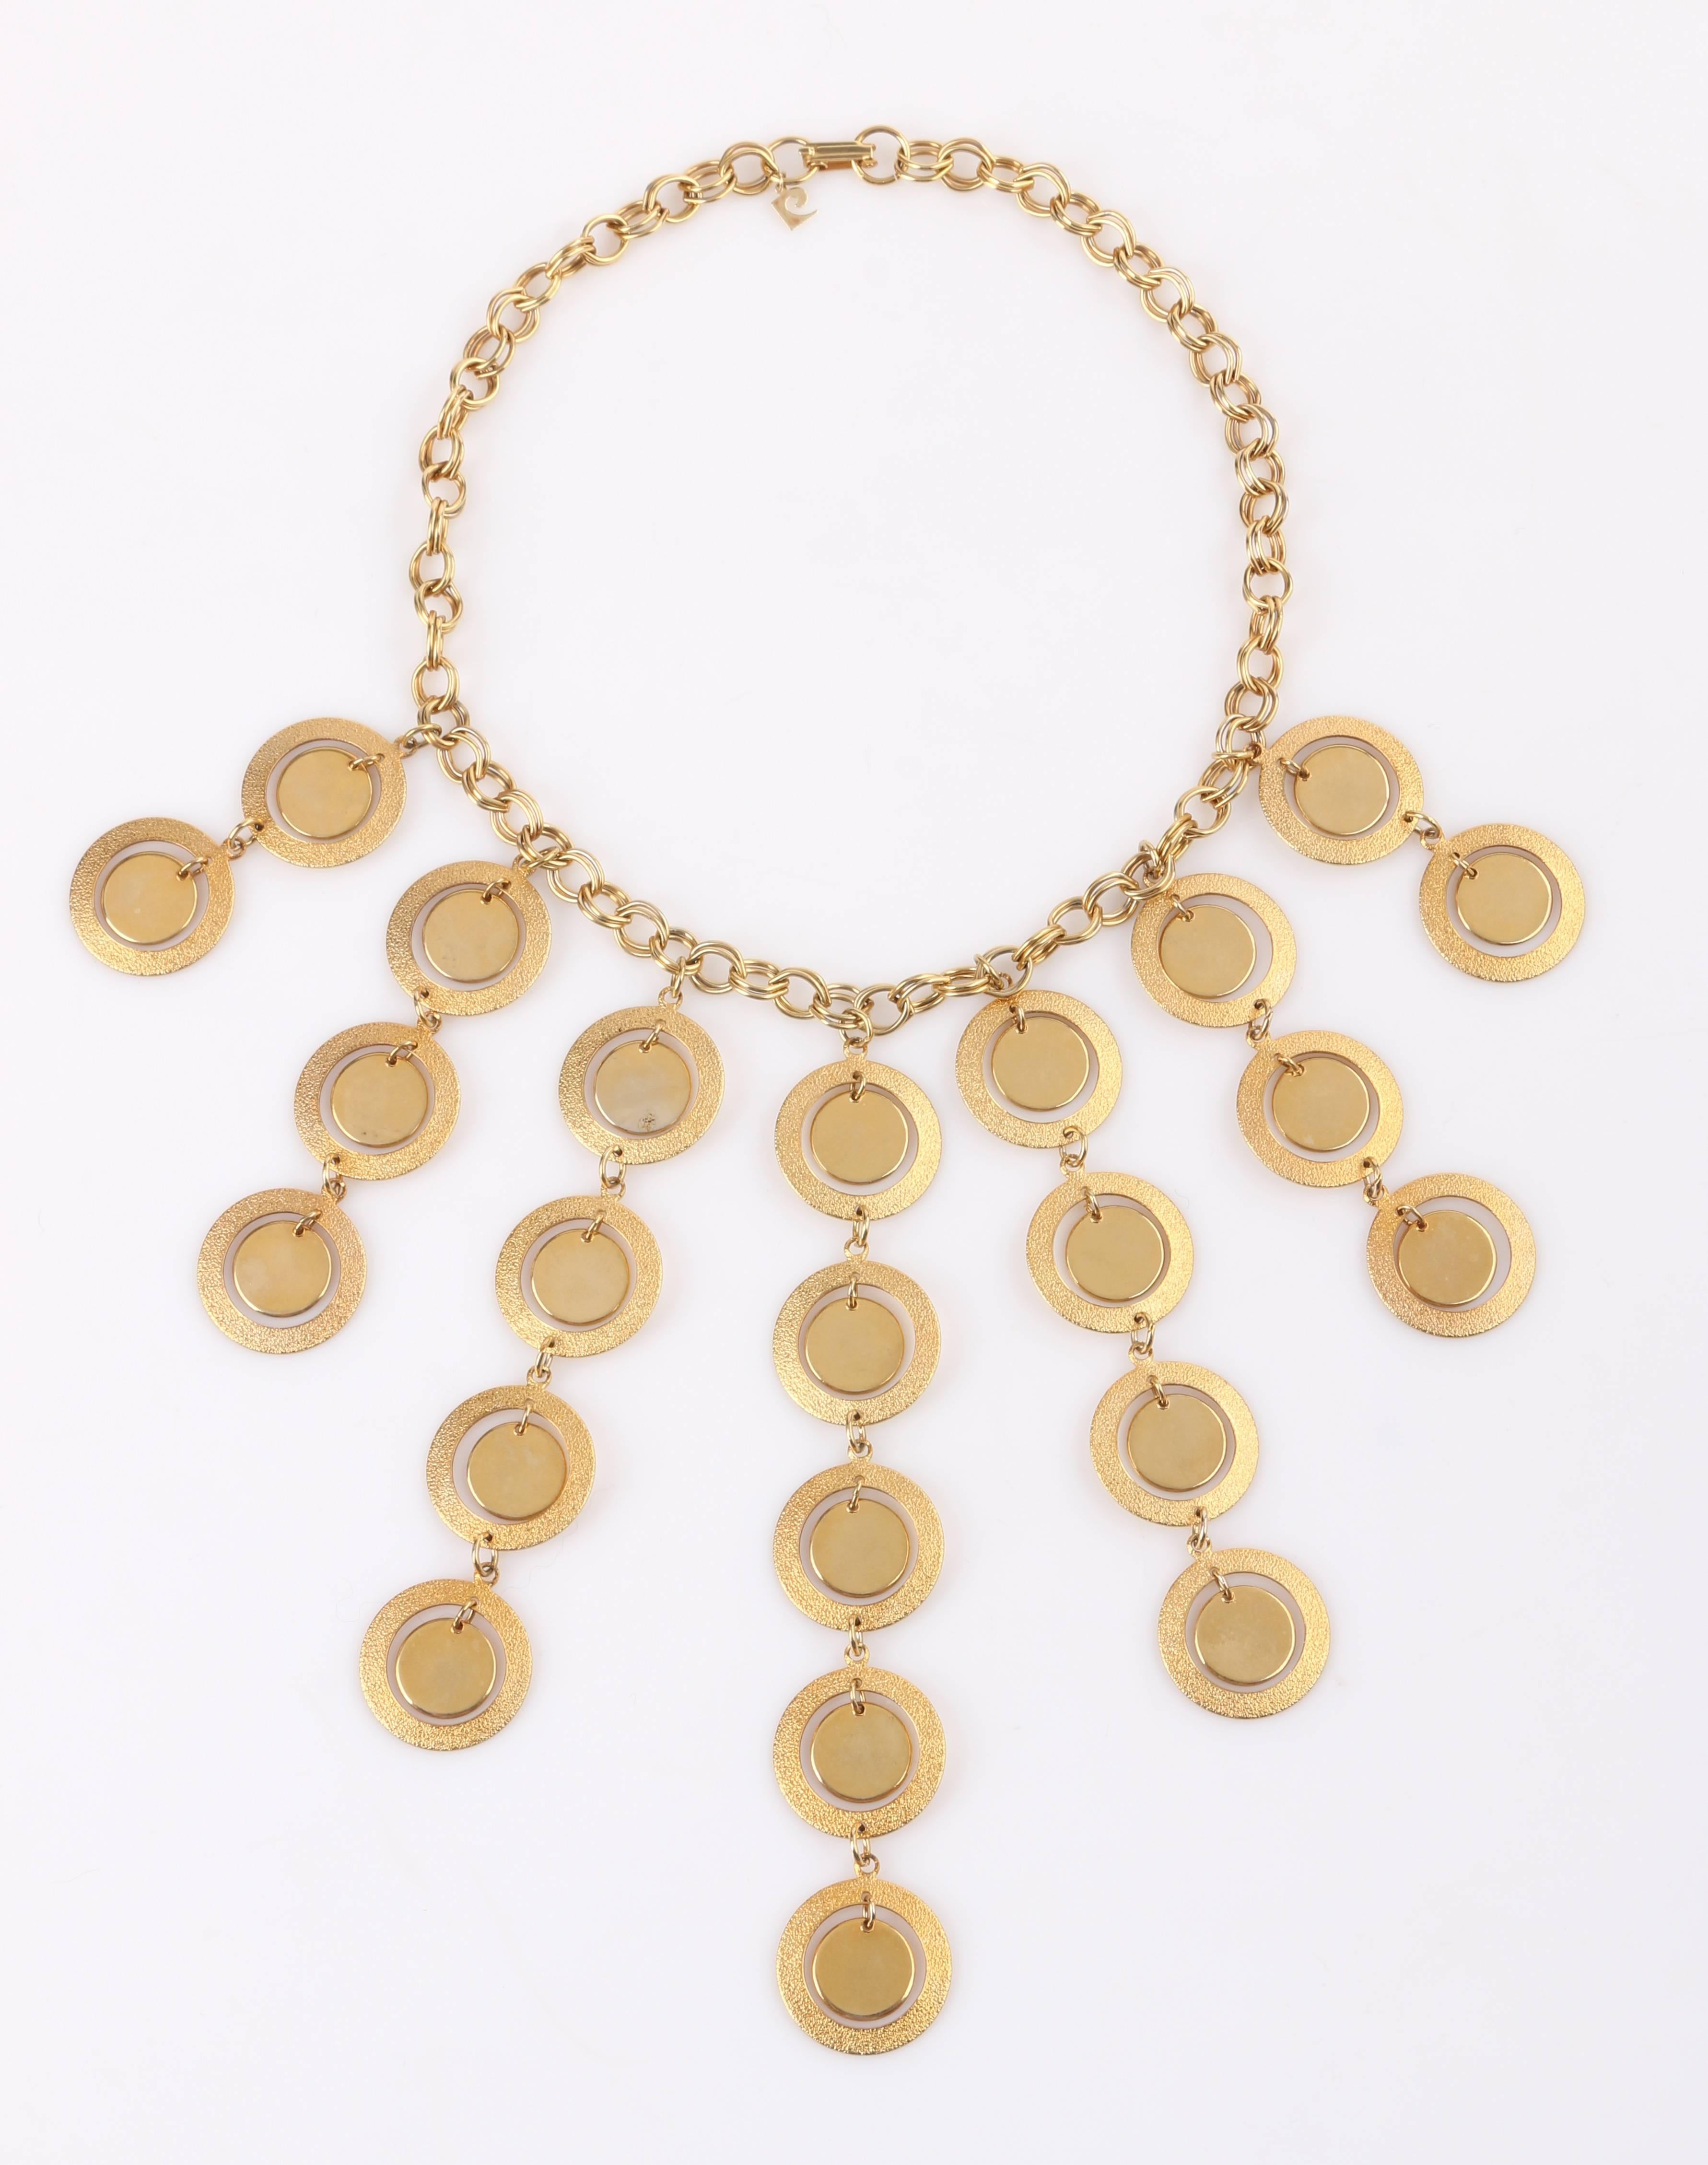 Vintage Pierre Cardin A.I.C. c.1960's gold modernist disc chandelier necklace. Sept gouttes de longueur variable, reliées entre elles par des liens en métal doré. Chaque goutte est composée d'anneaux extérieurs en métal texturé et de disques